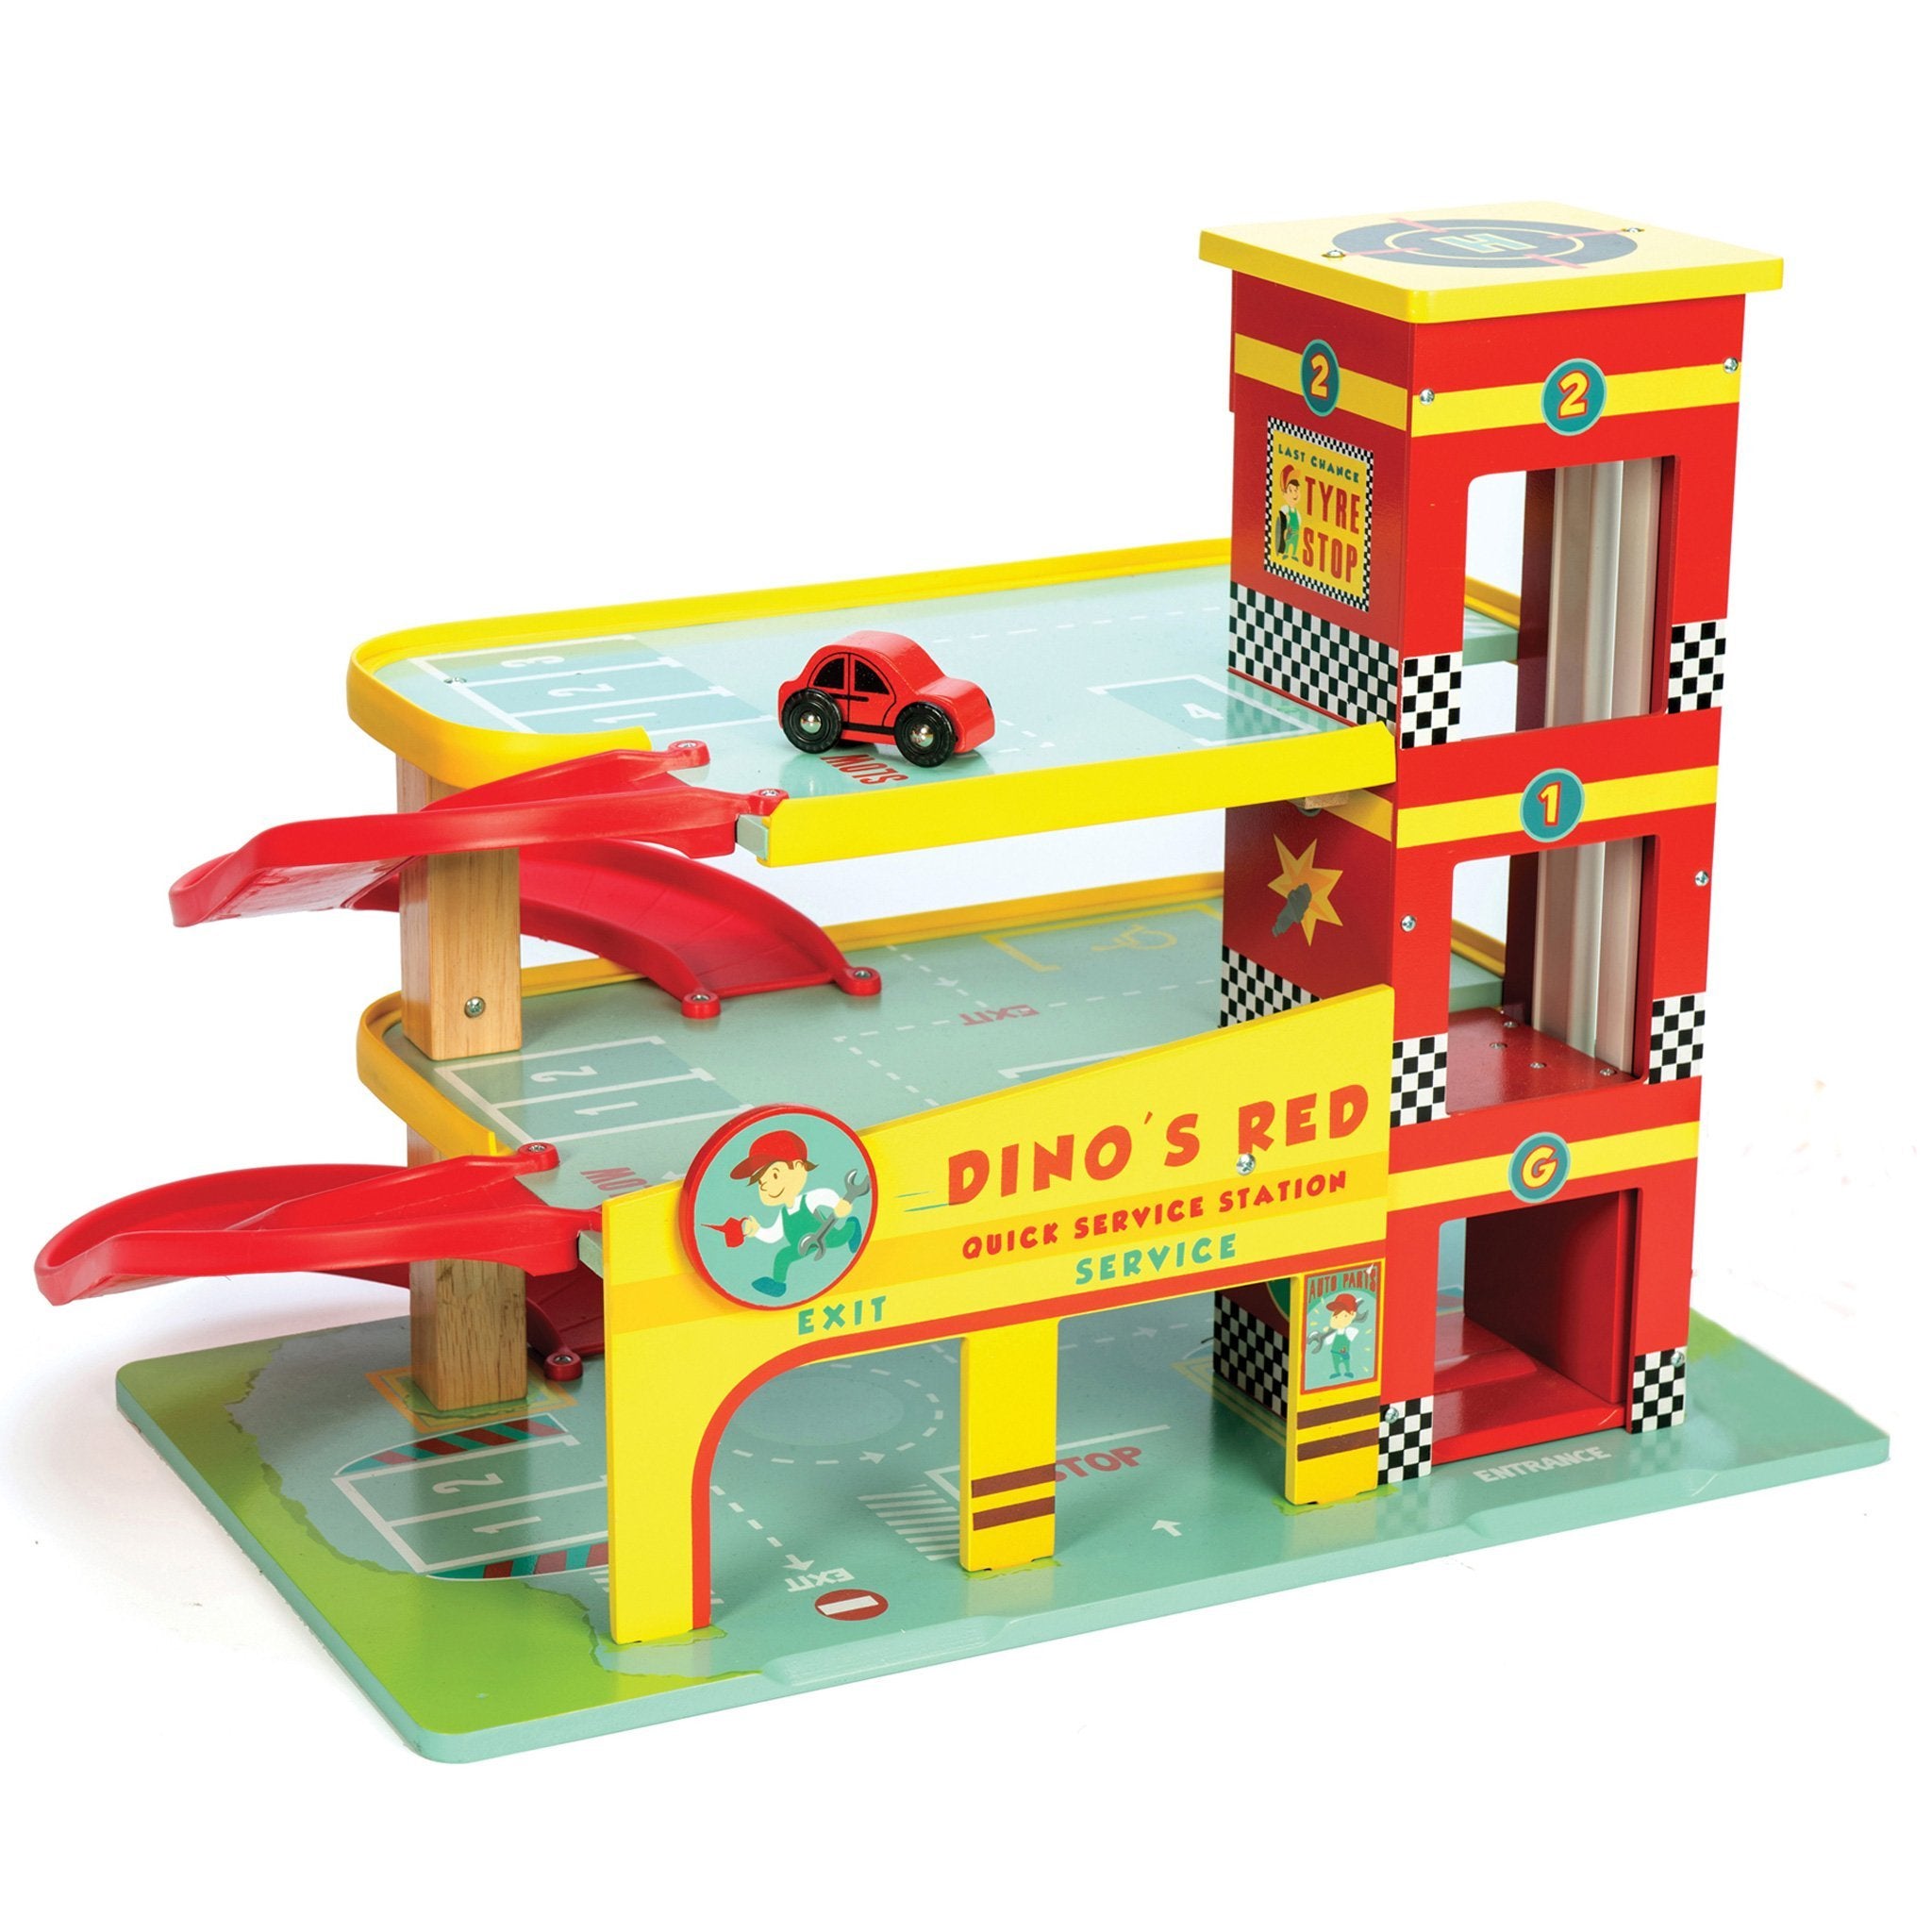 Le Toy Van Dinos Red Garage